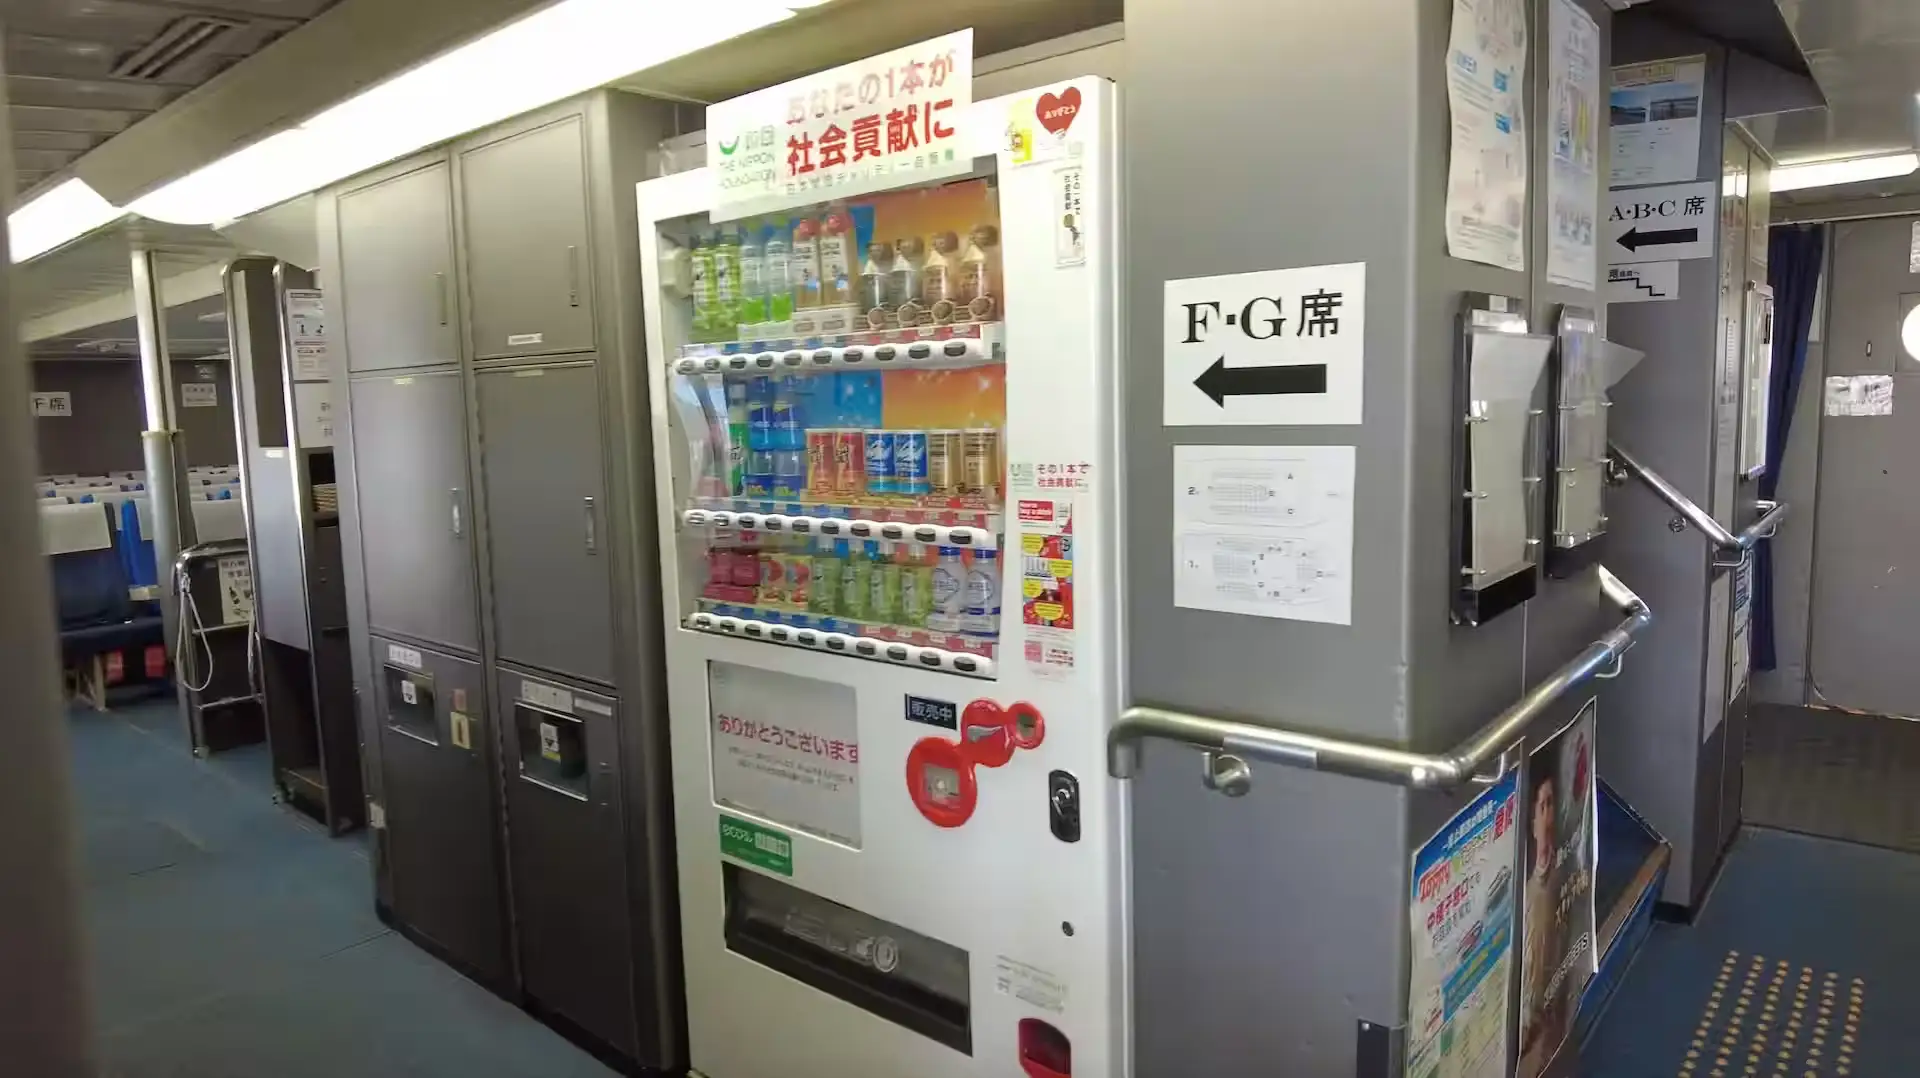 타네야쿠 고속 보트 로켓 2 내부의 1층 자판기